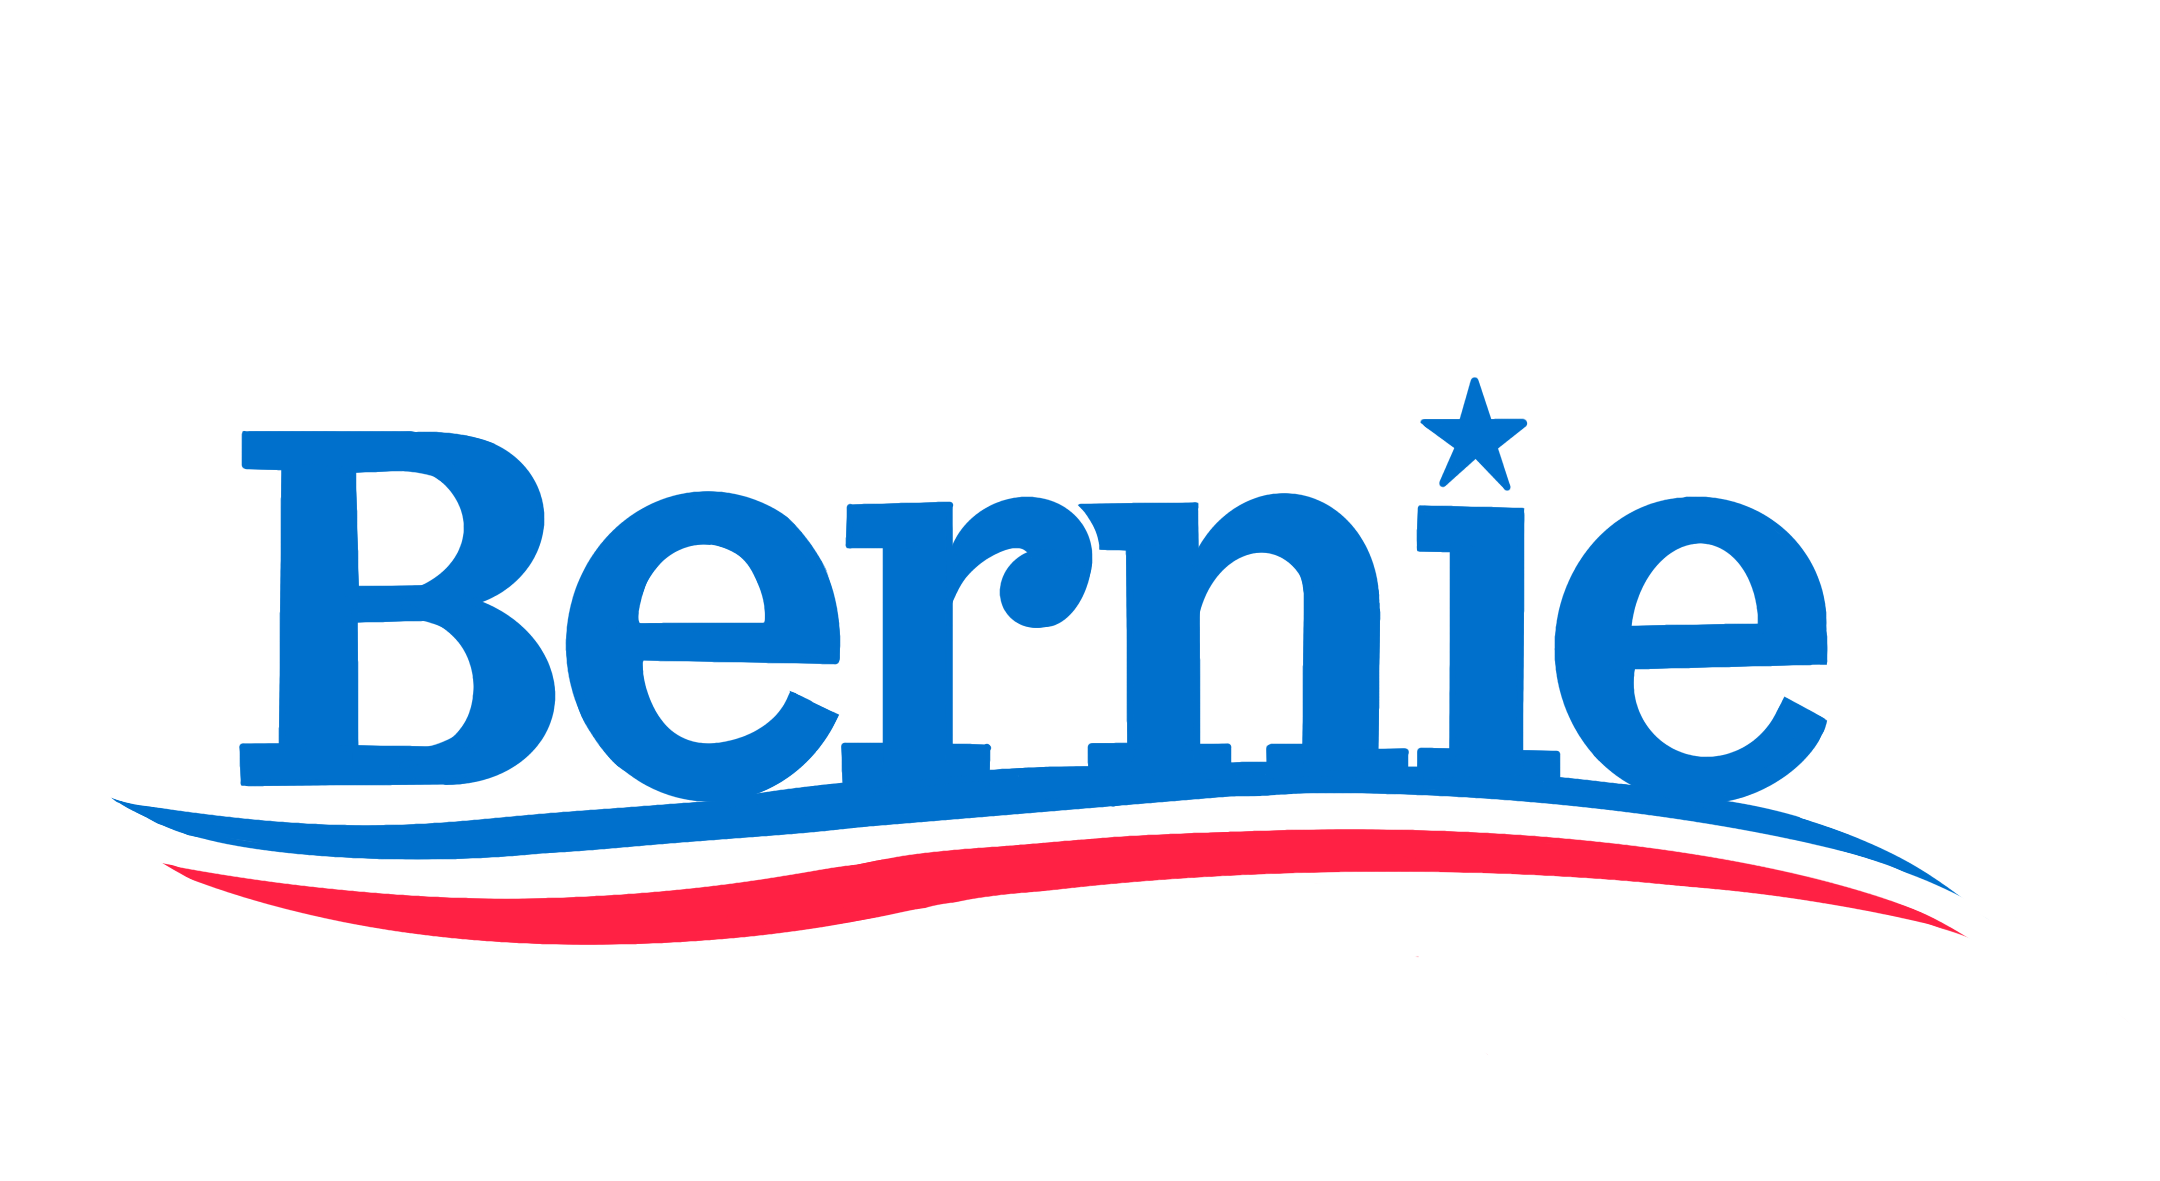 Bernie logo poster HD Blank Meme Template